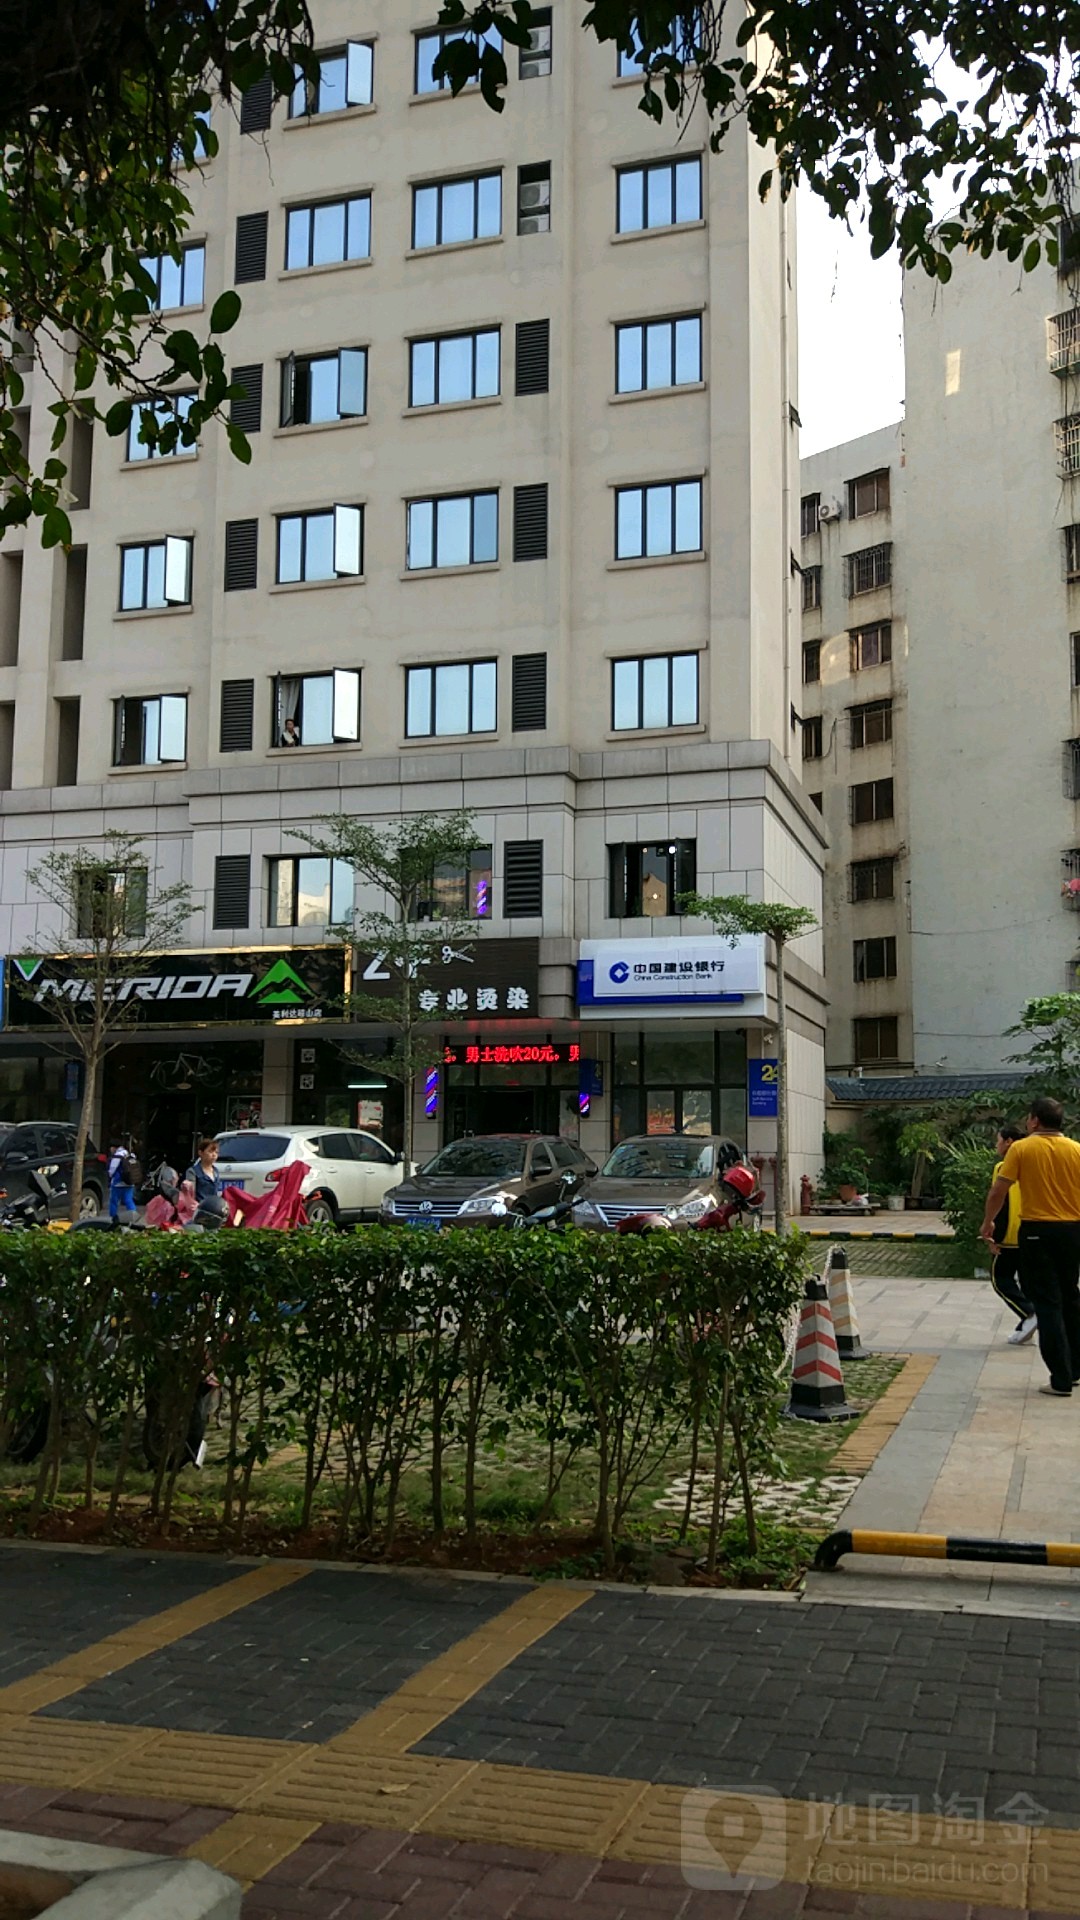 中國建設銀行24小時自助銀行服務(瓊州大道店)